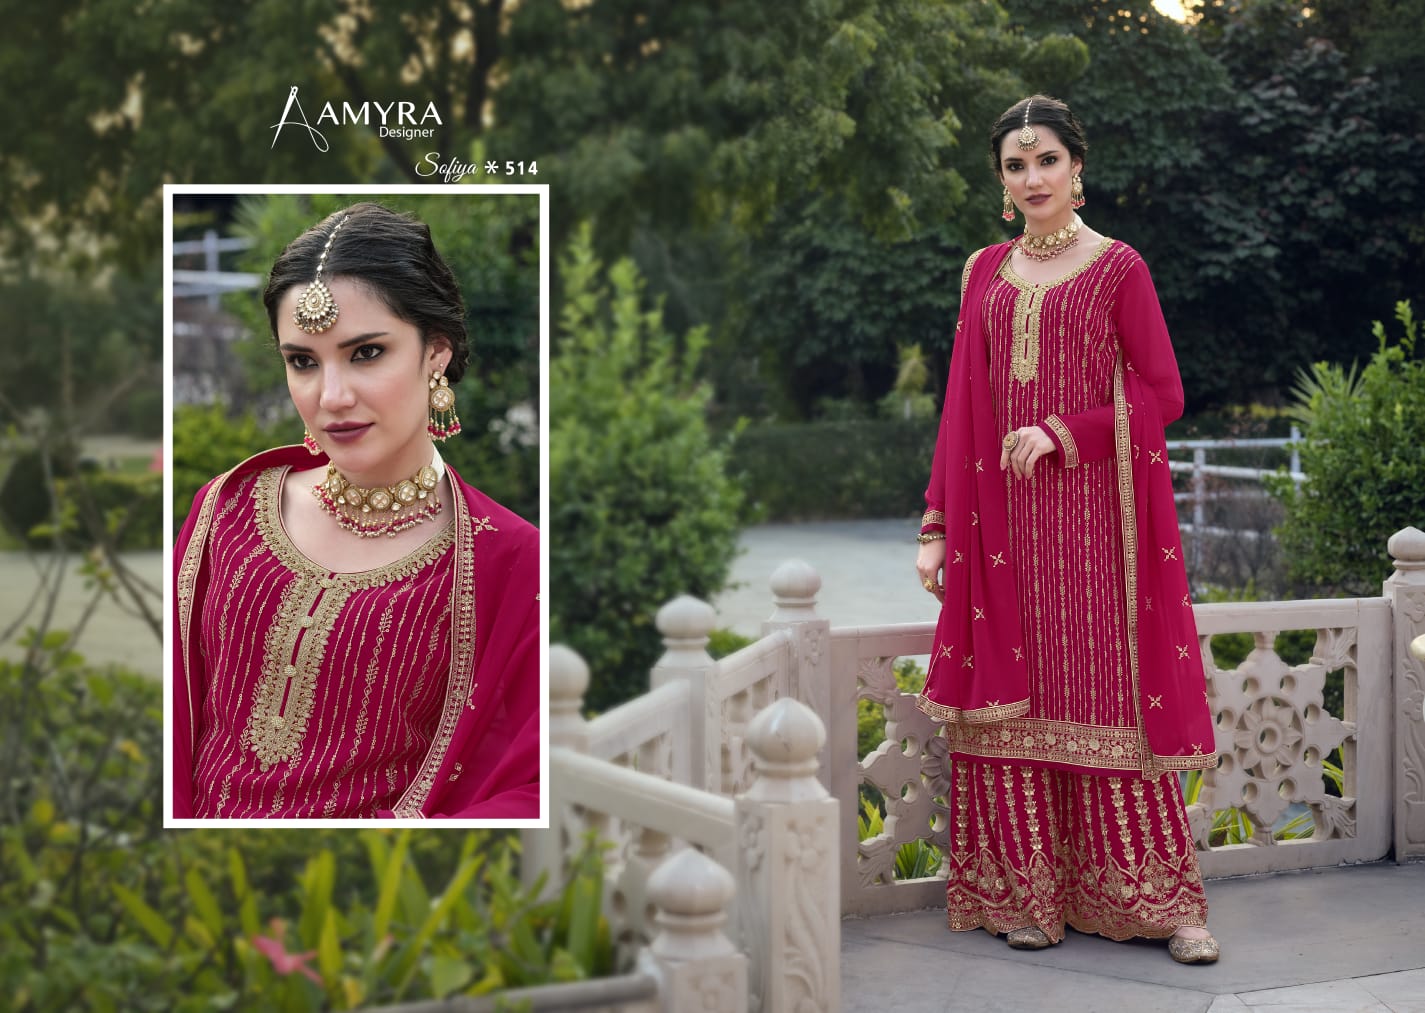 amyra designer sofiya vol 4 georgett festive look salwar suit catalog